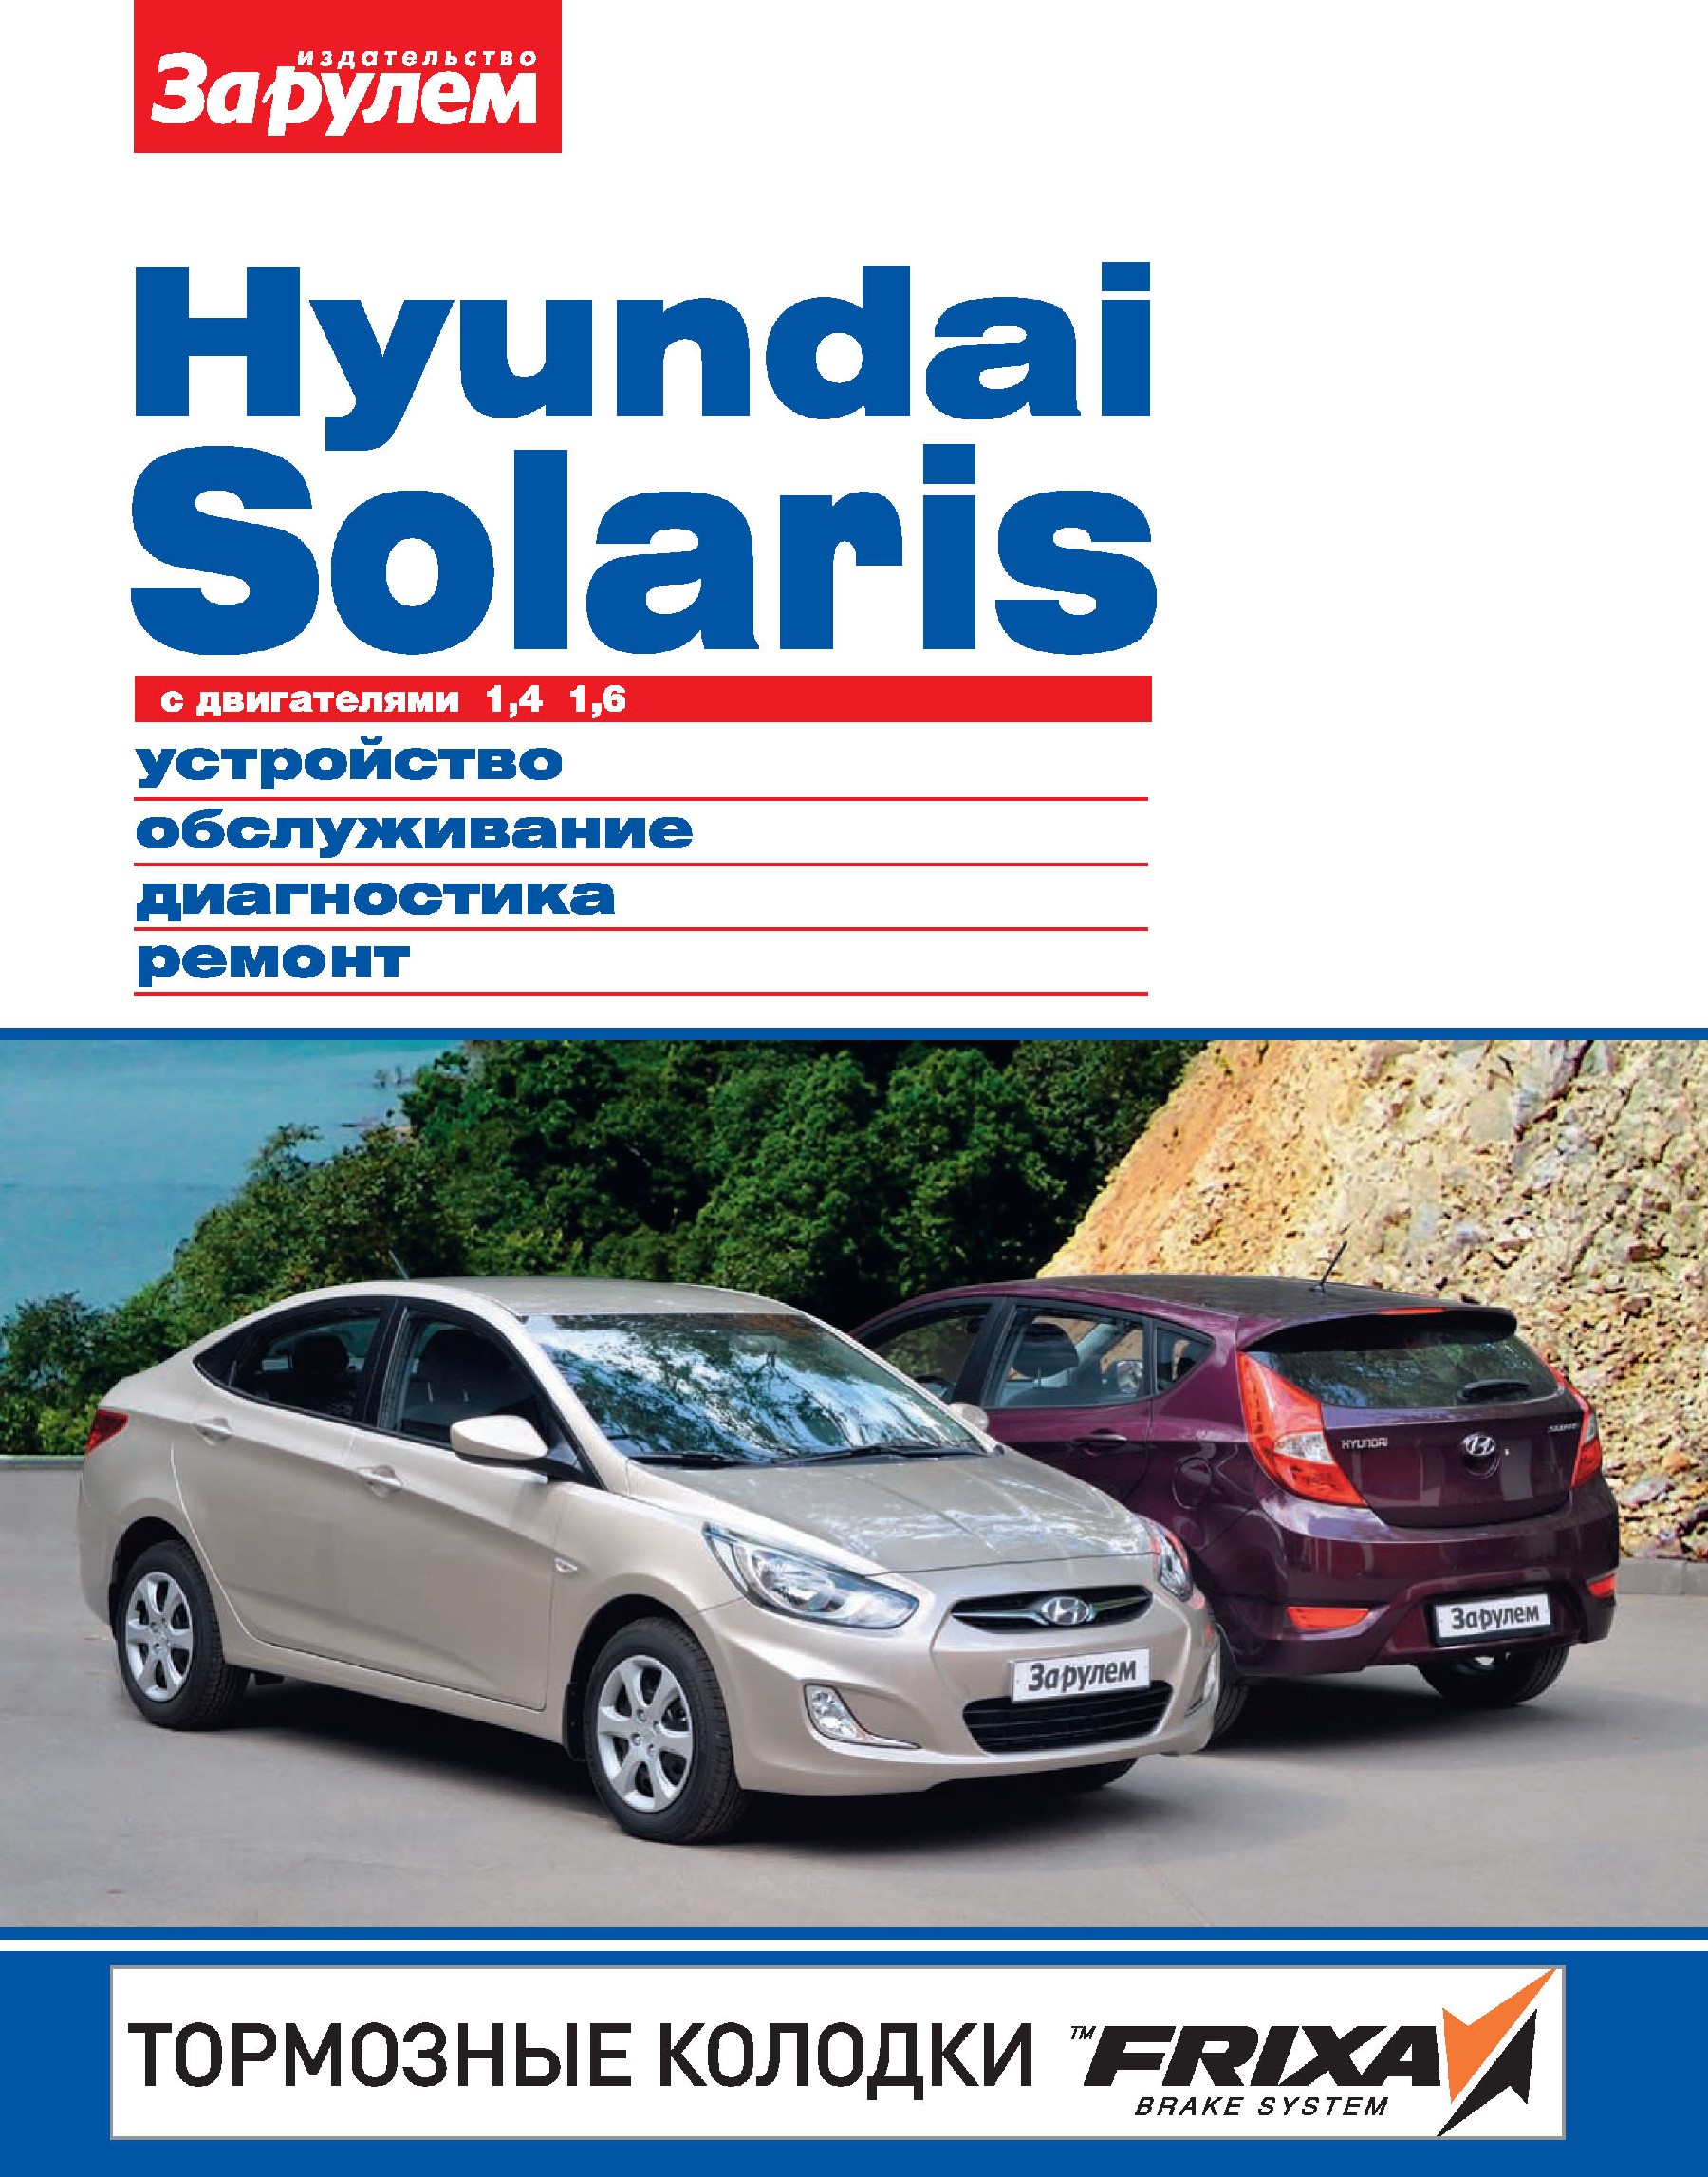 Ремонт и сервисное обслуживание Hyundai | Цены официального дилера ТТС